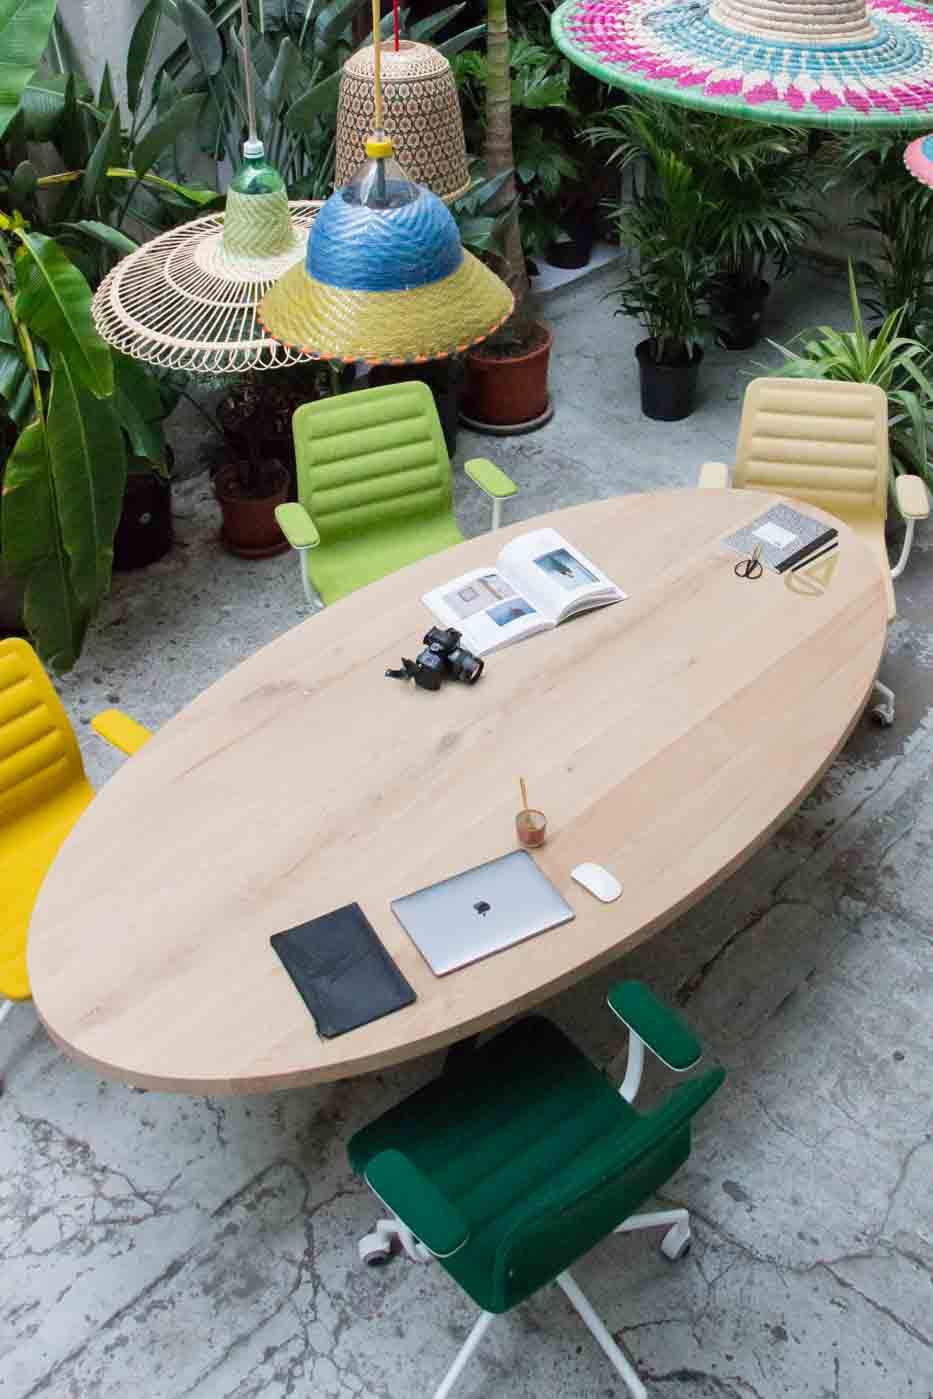 Nos meilleurs conseils pour choisir la parfaite table de réunion ! Symbole de convivialité, lieu de créativité, la table de réunion tient une place centrale dans les locaux d'une entreprise, elle doit répondre à chaque besoin.